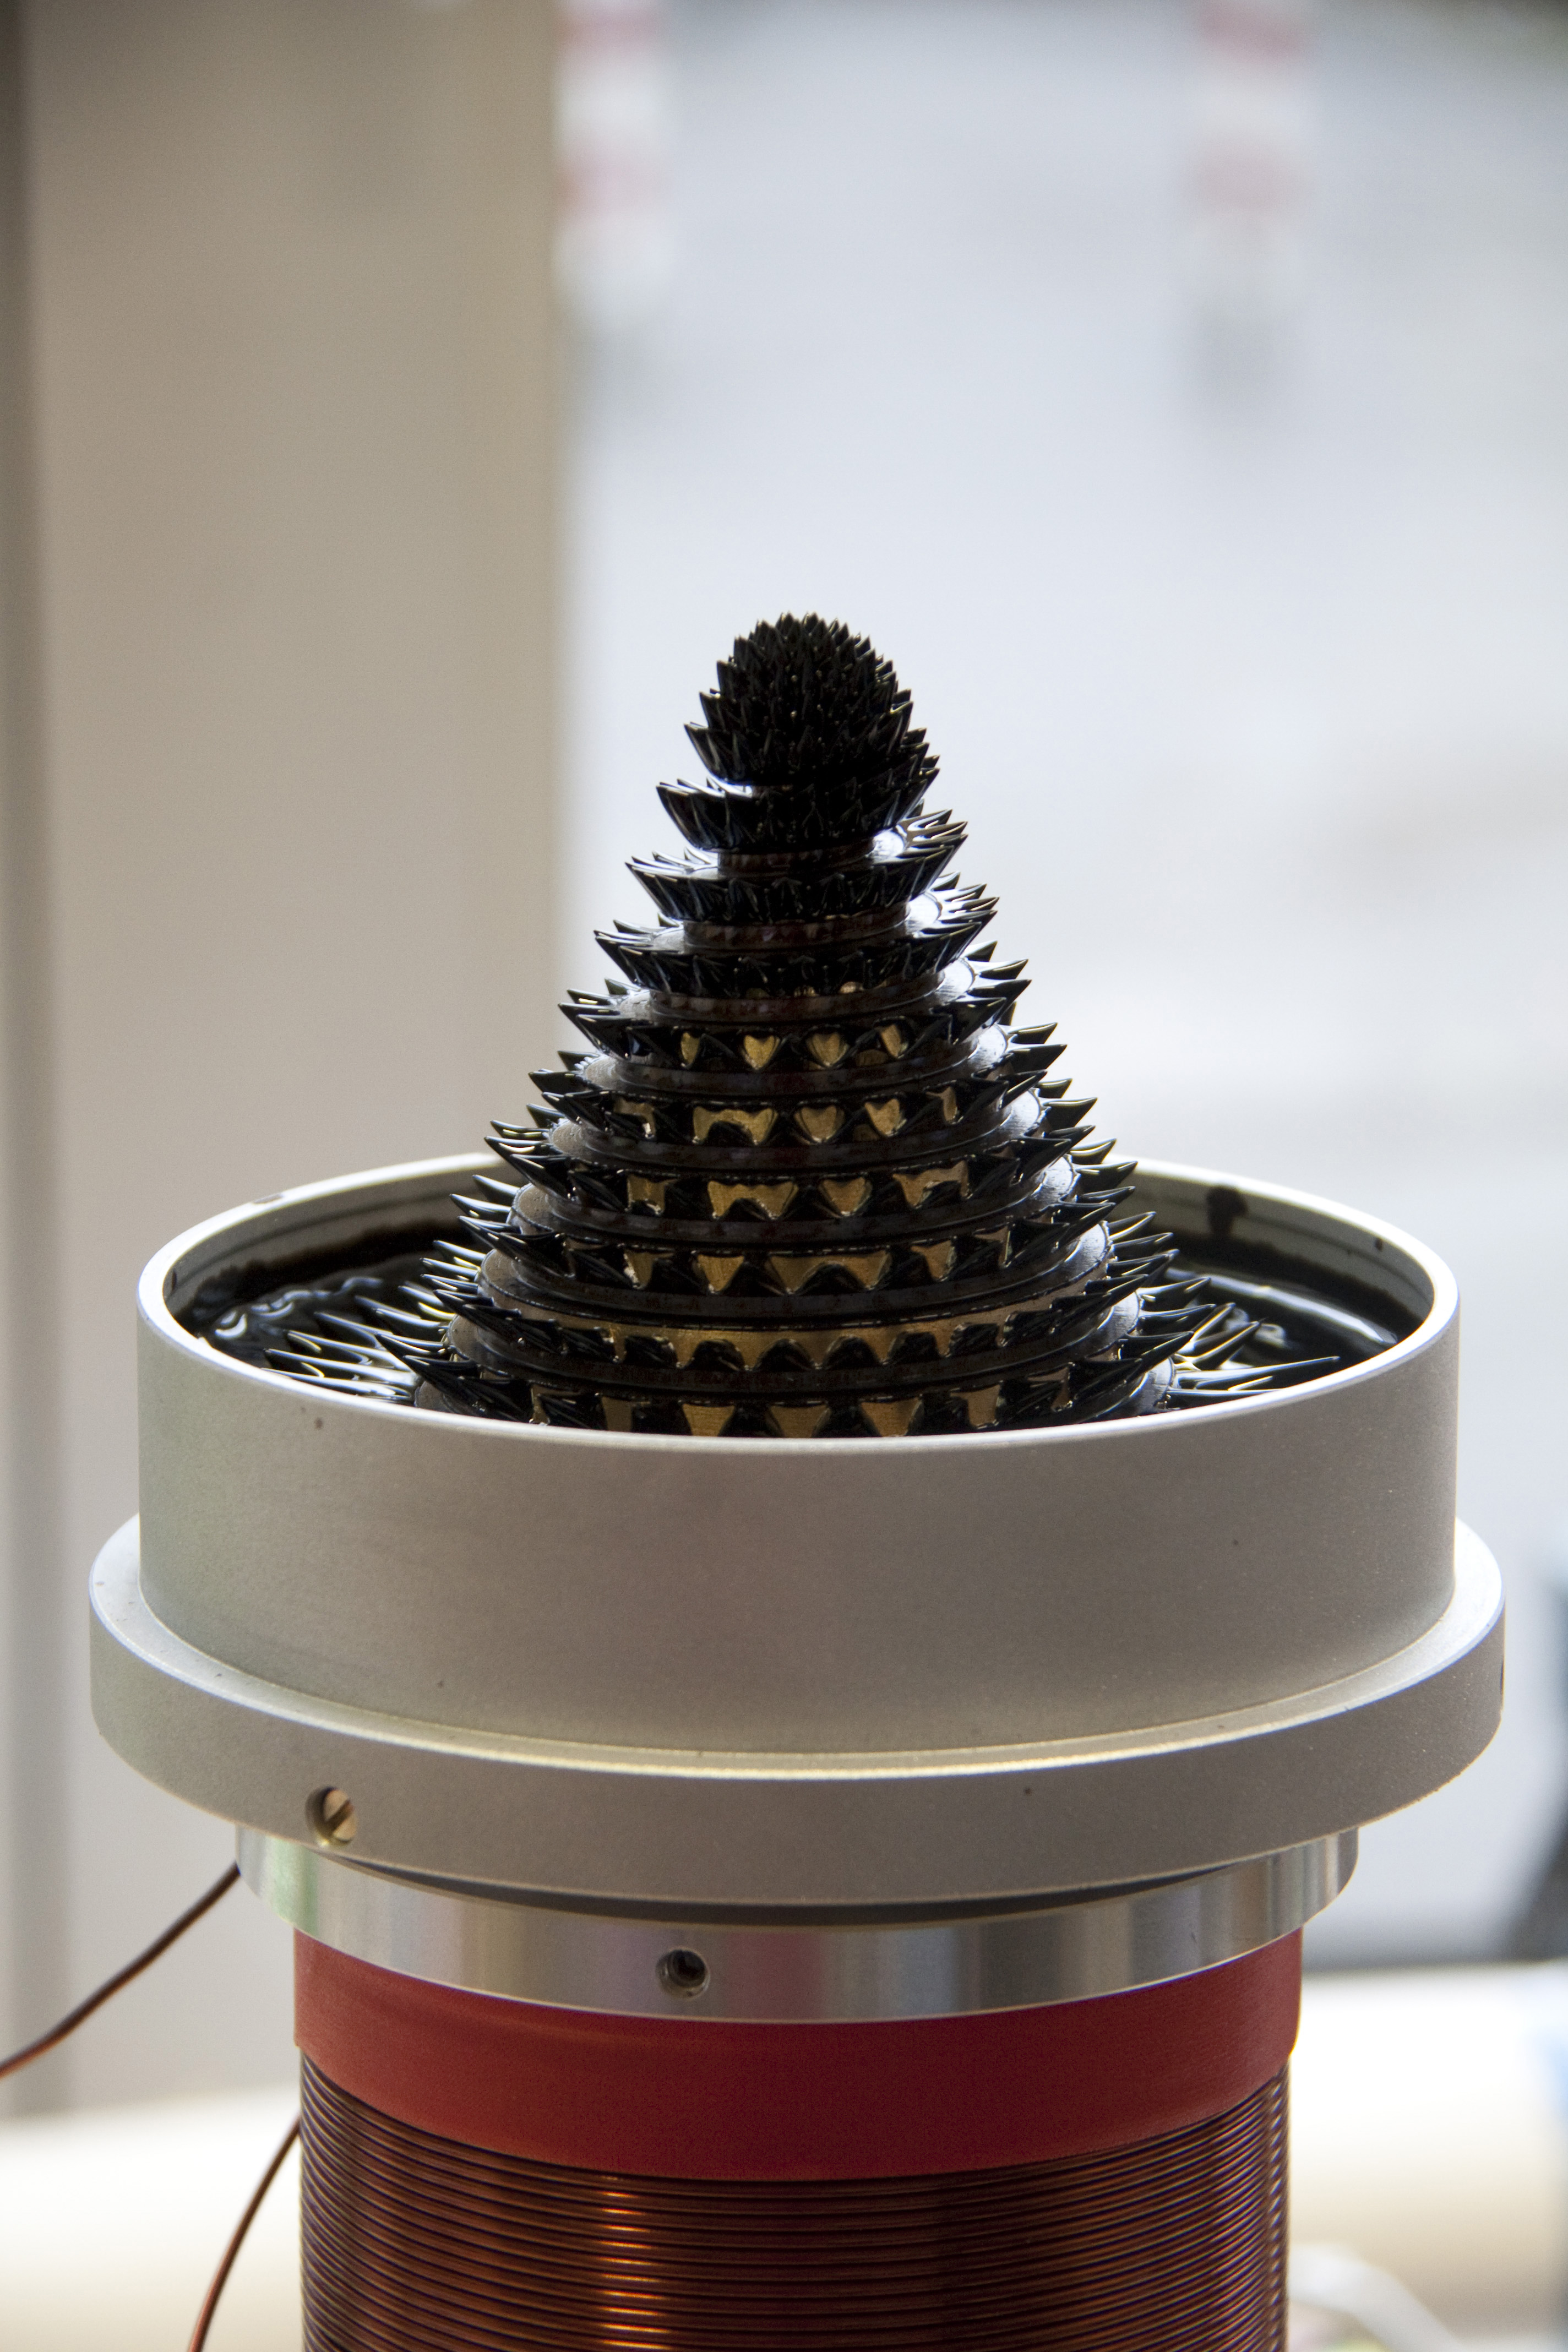 Mit dem Ferrofluid-Brunnen zeigt CeNIDE, wie sich winzige magnetische Partikel beeinflussen lassen. Foto: CeNIDE